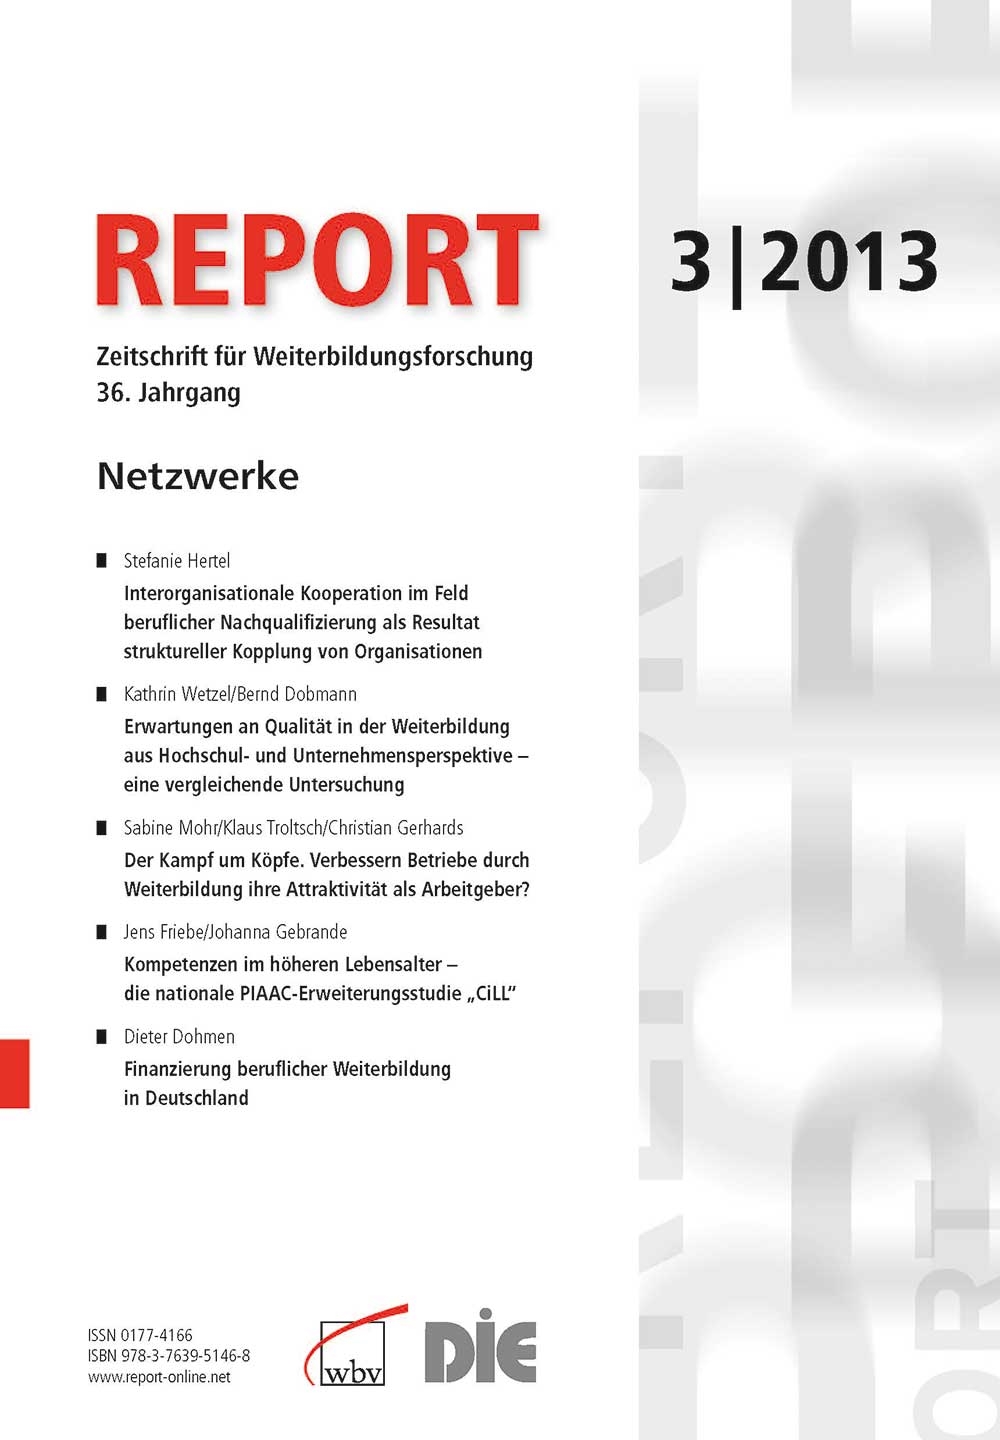 REPORT- Zeitschrift für Weiterbildungsforschung 03/2013